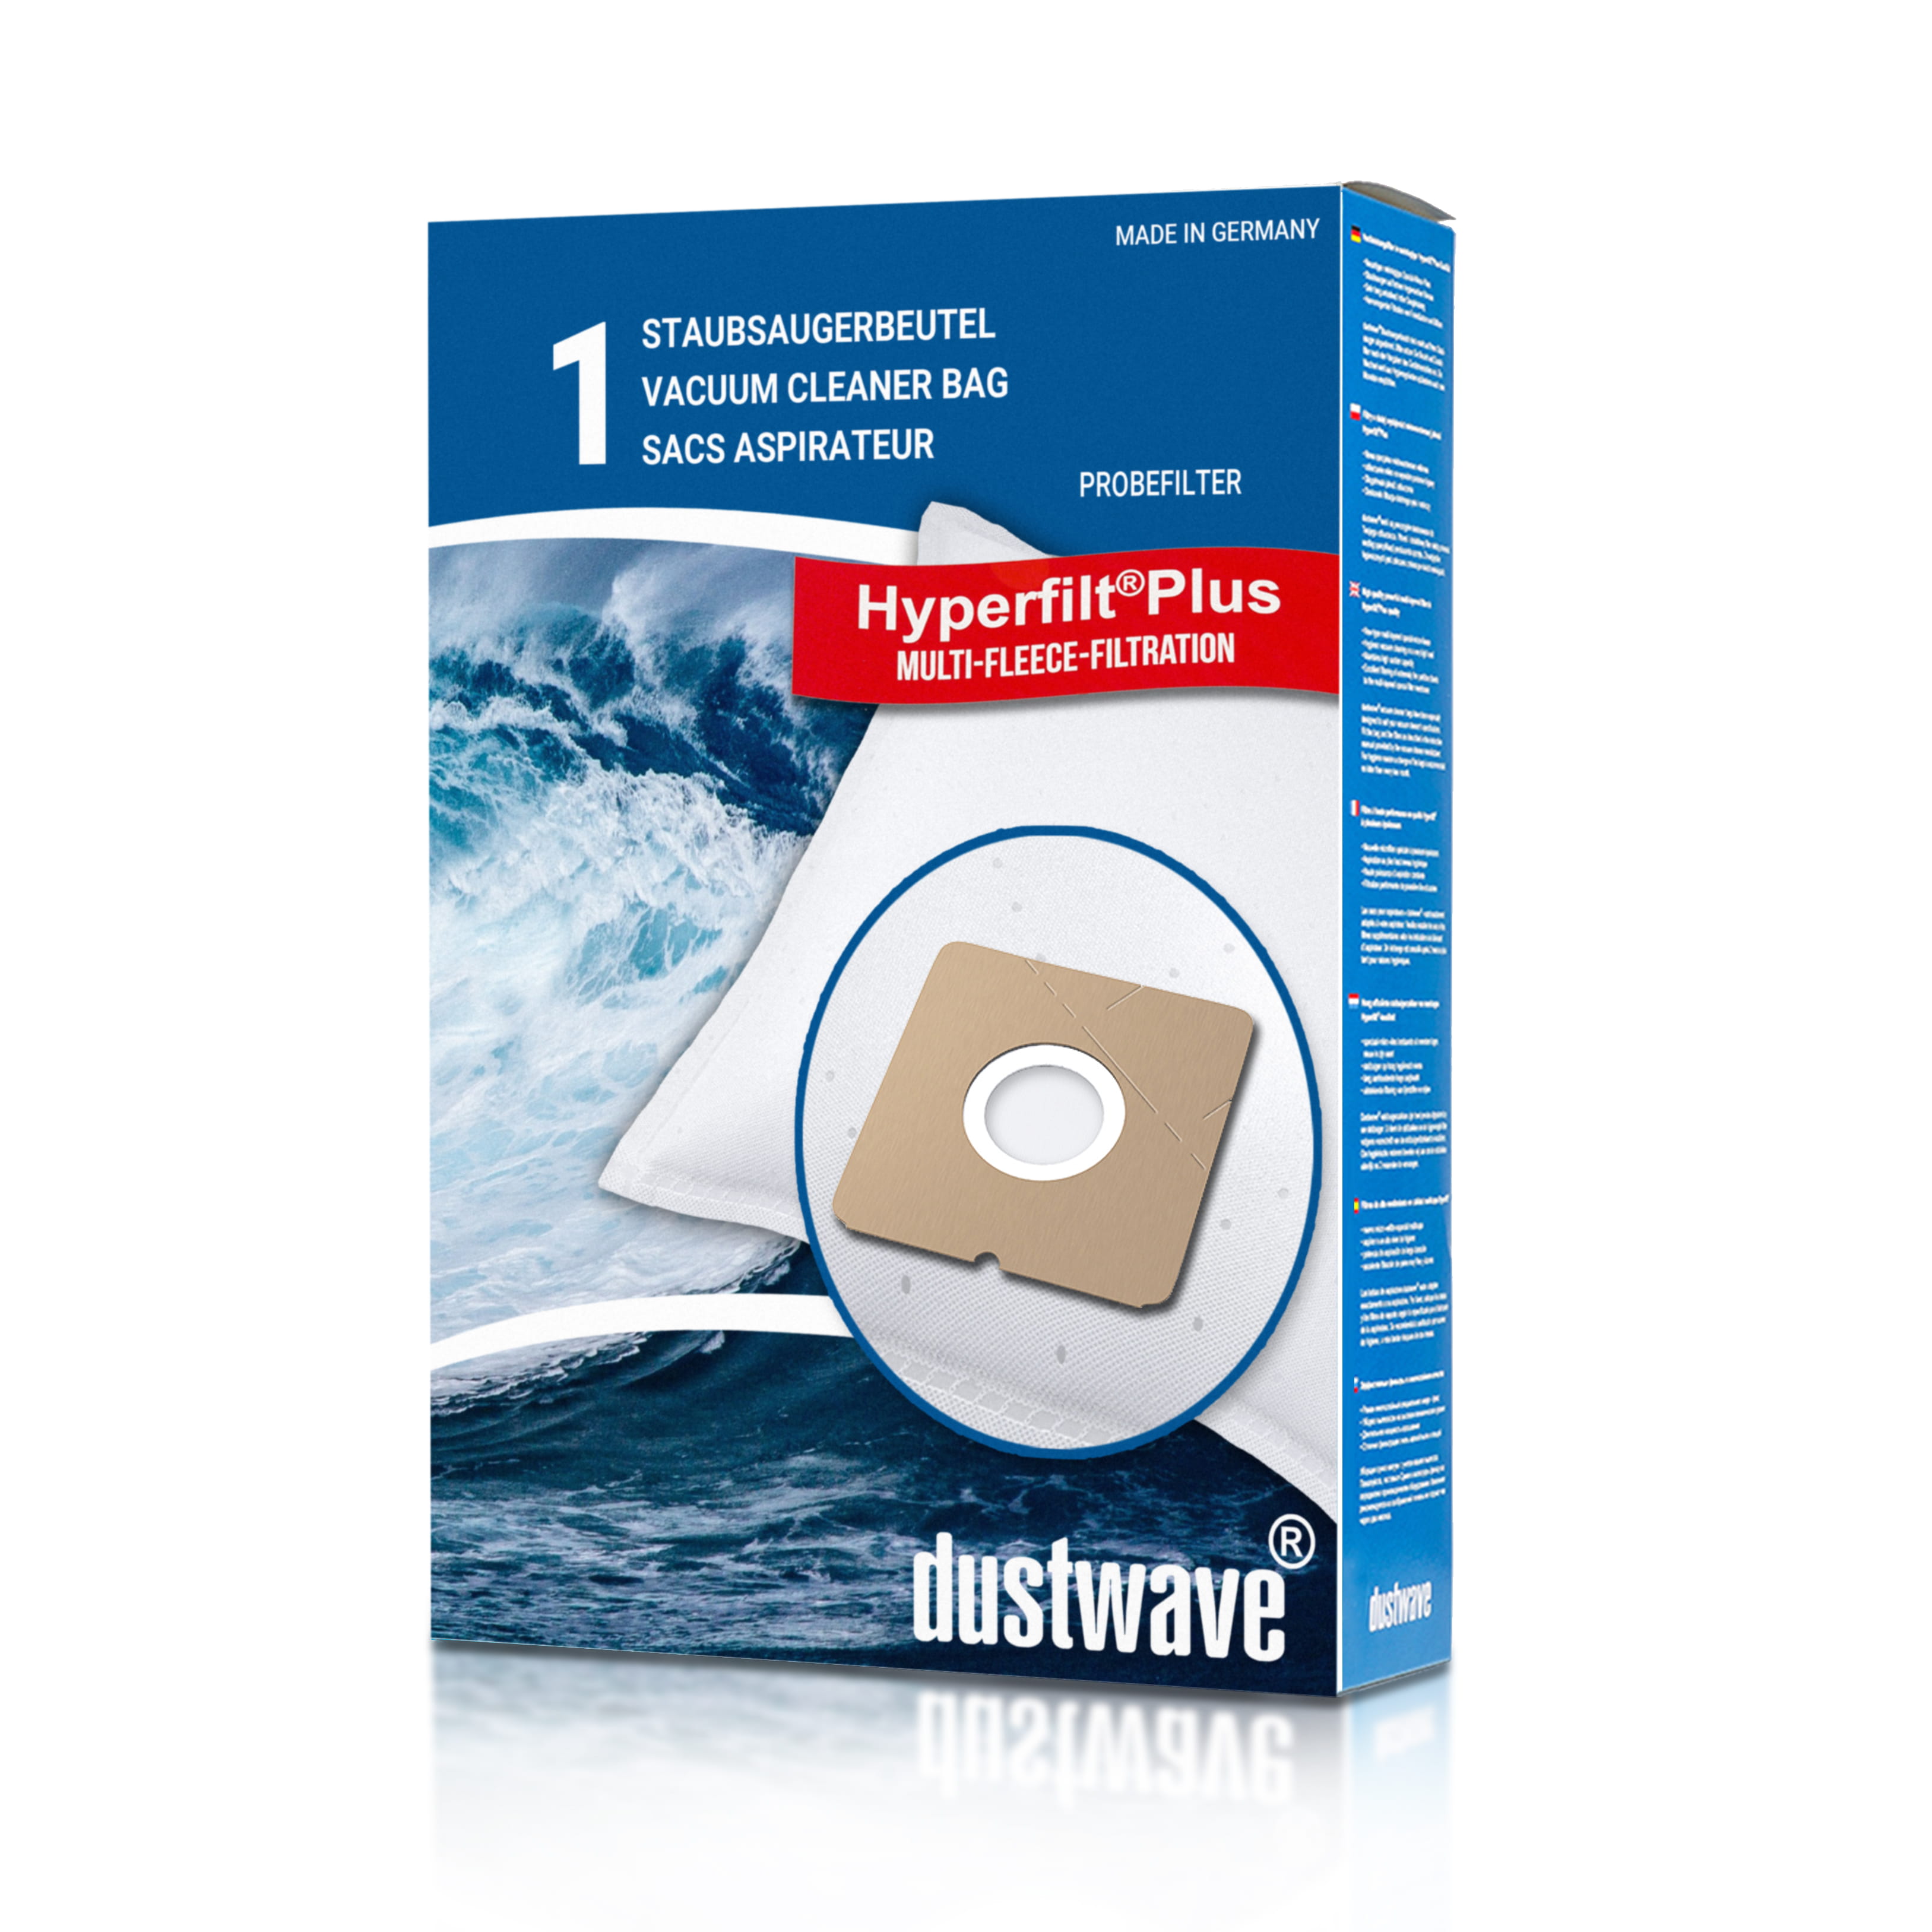 Dustwave® 1 Staubsaugerbeutel für AquaPur DIV 980 - hocheffizient, mehrlagiges Mikrovlies mit Hygieneverschluss - Made in Germany